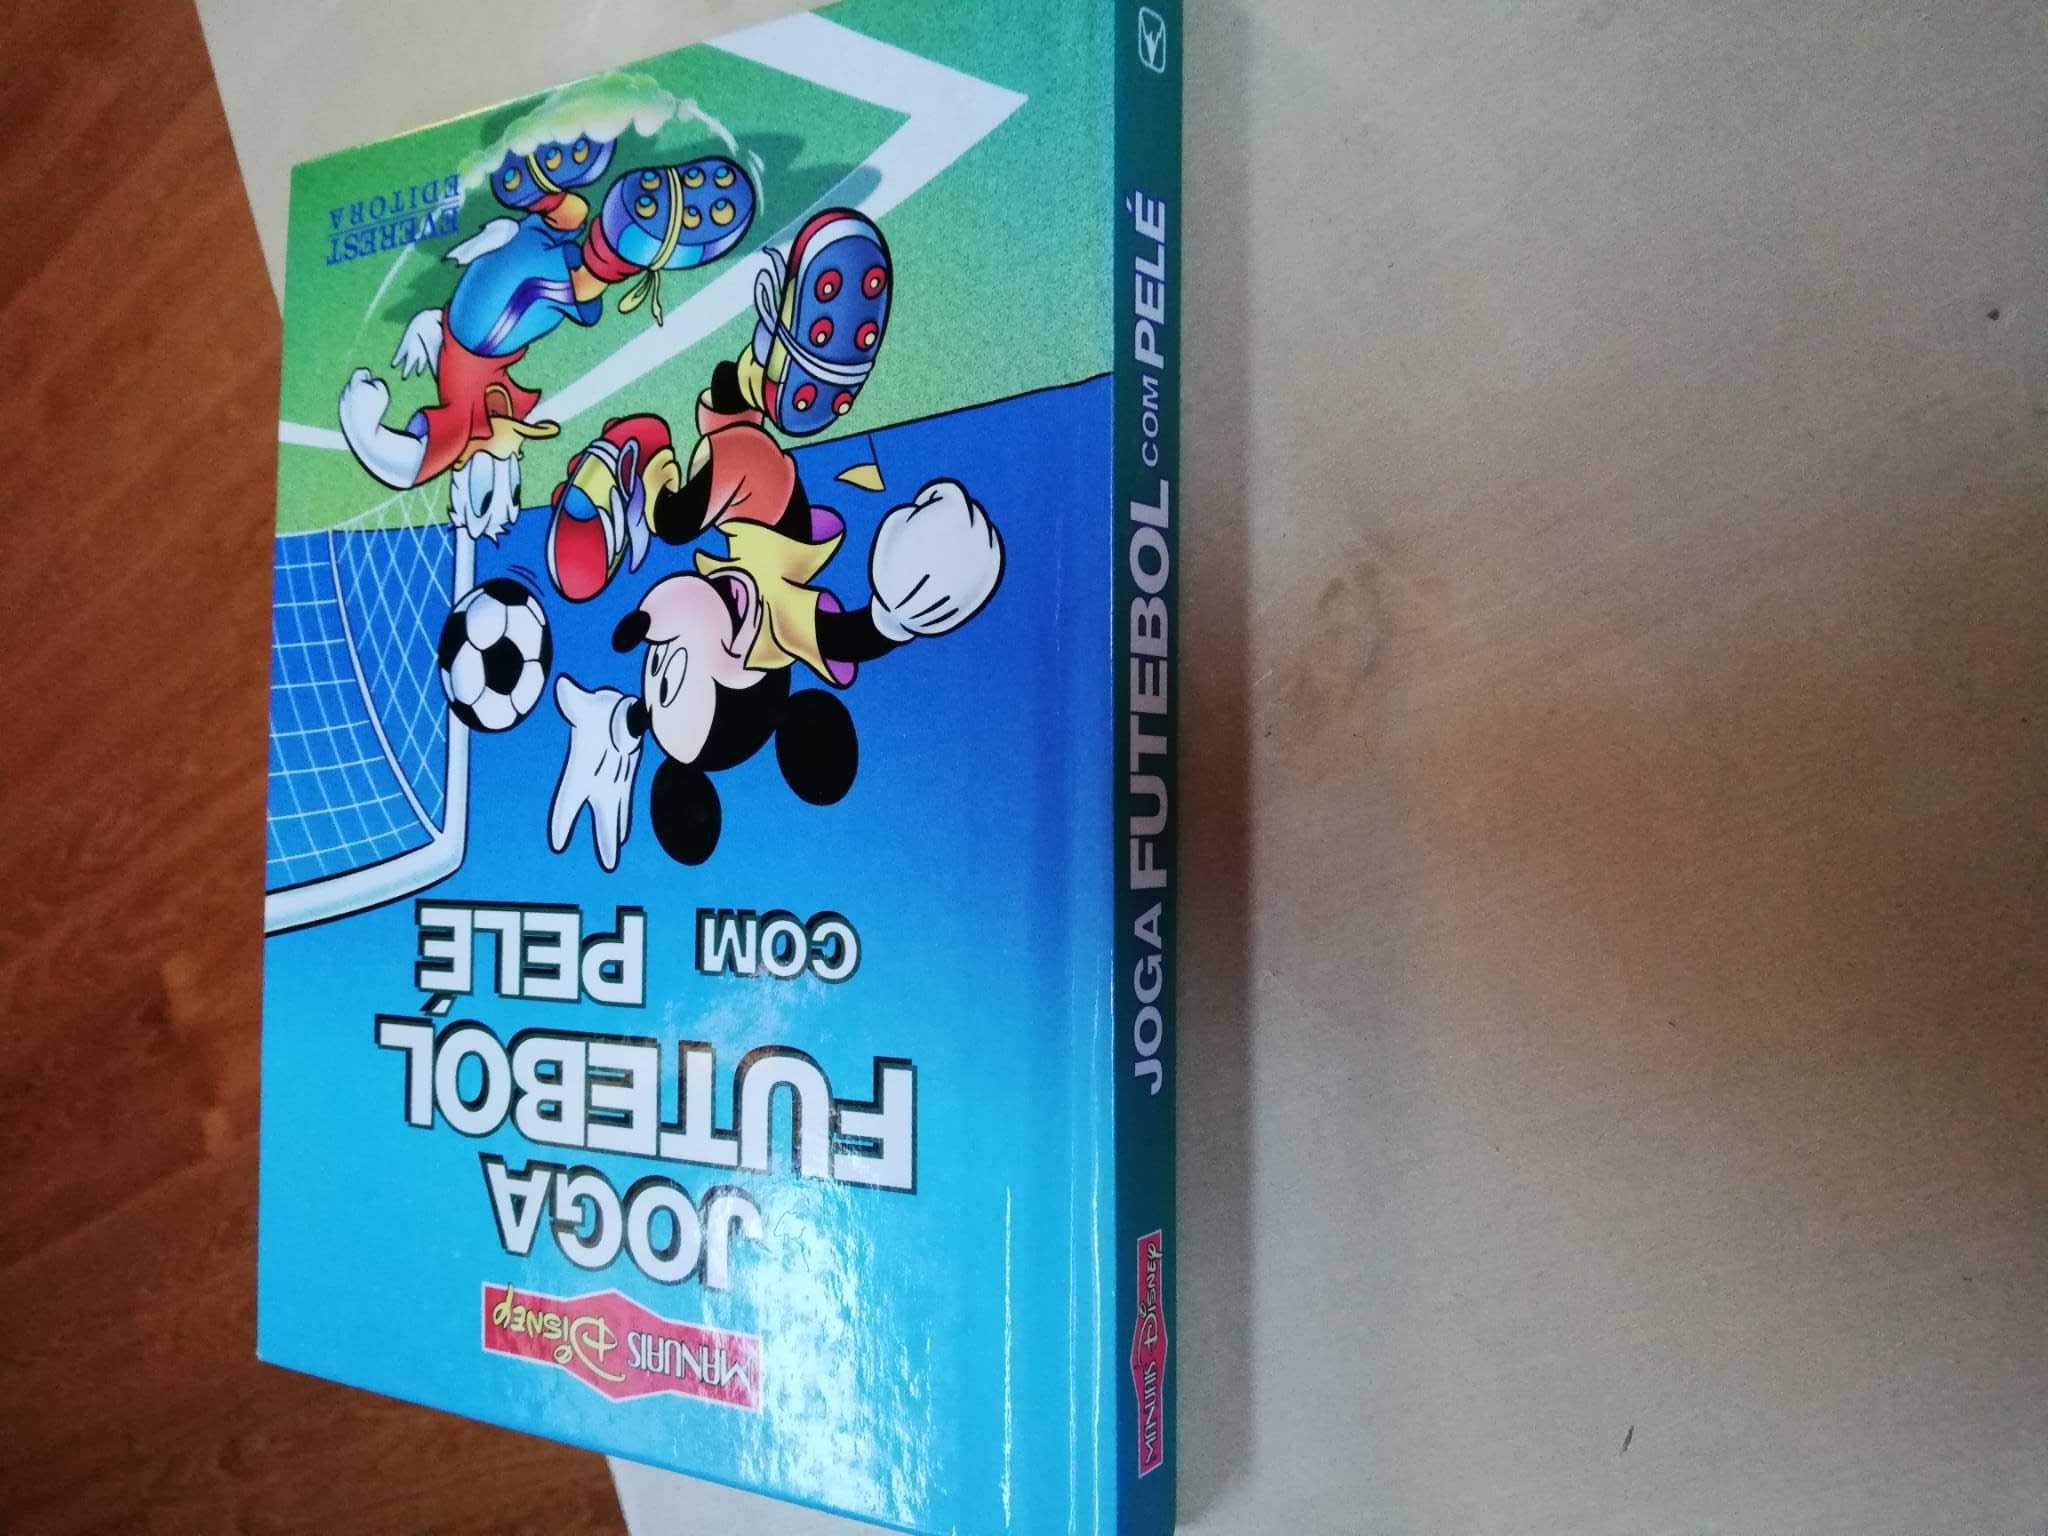 Livro Joga Futebol com Pelé da Disney em Português